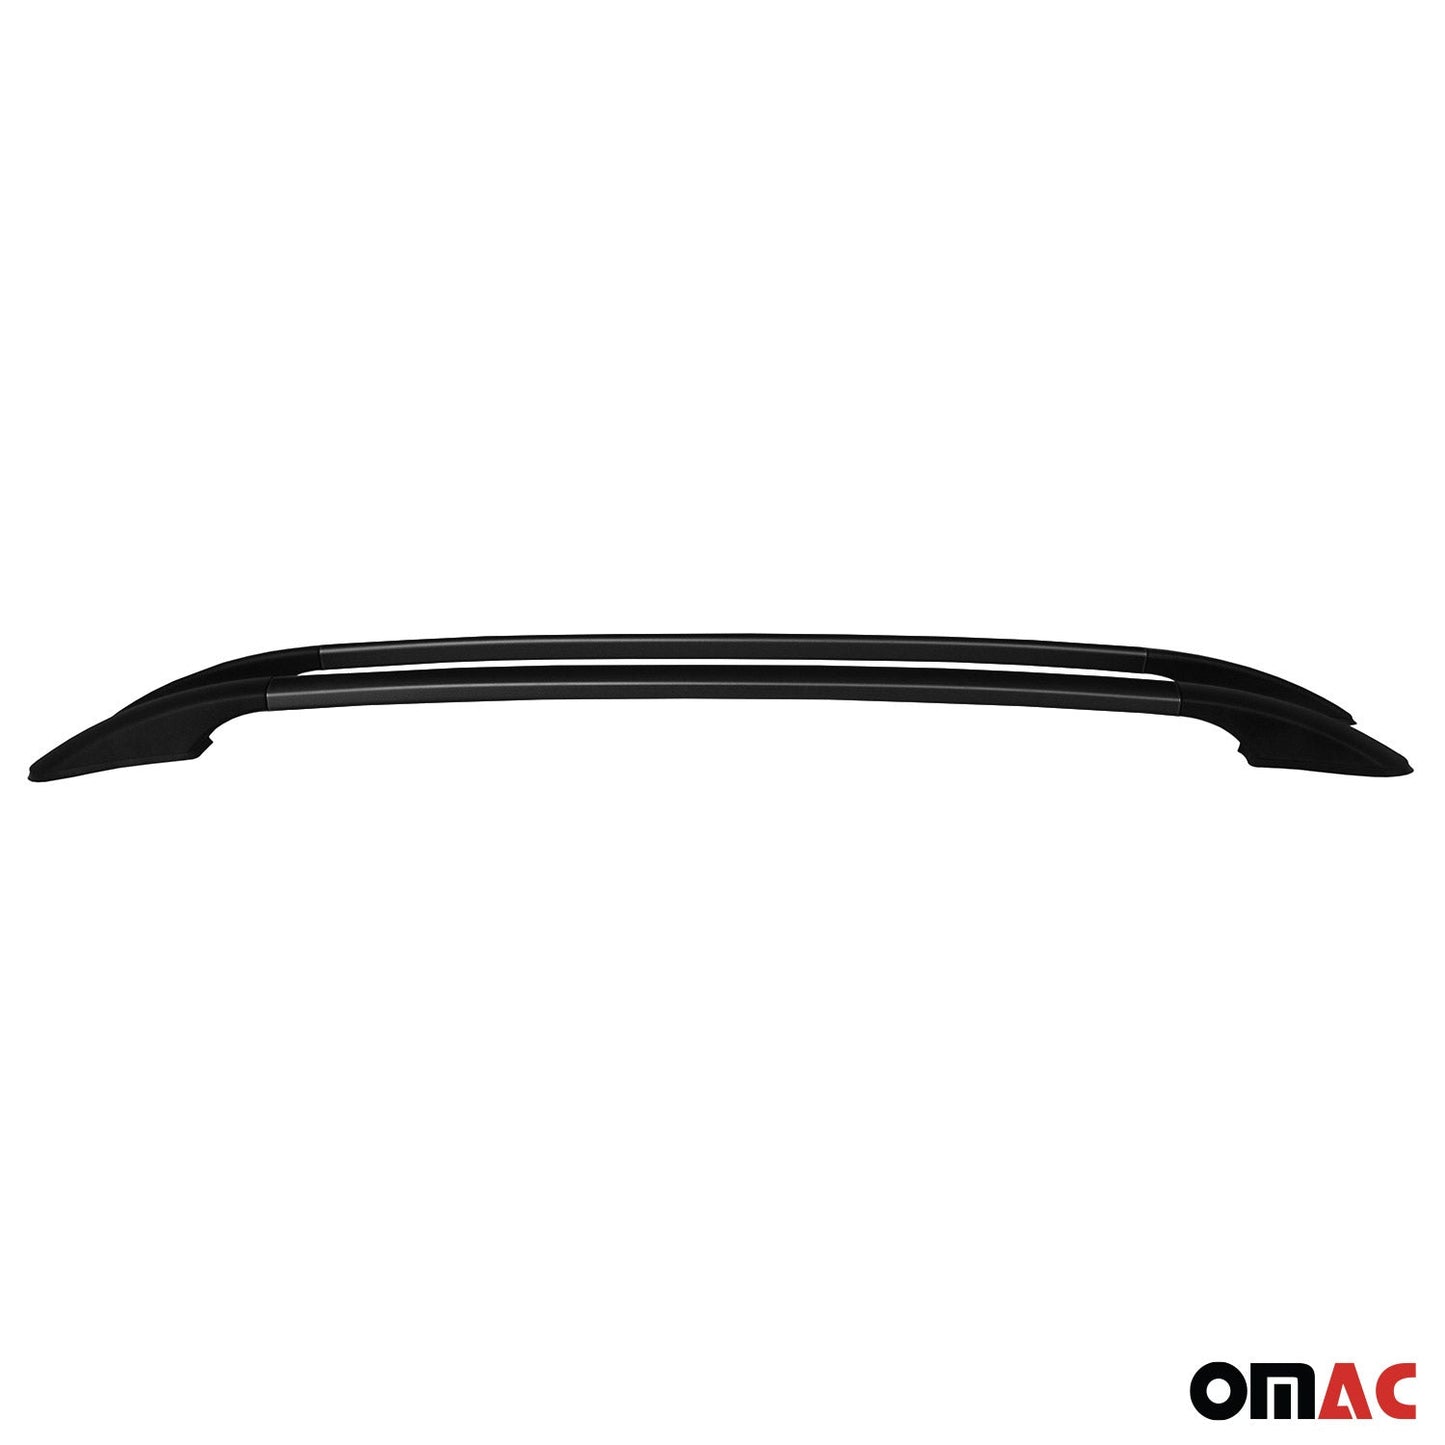 OMAC Roof Rack Side Rails Aluminium for VW Golf Mk6 2010-2014 Black 2 Pcs U012939